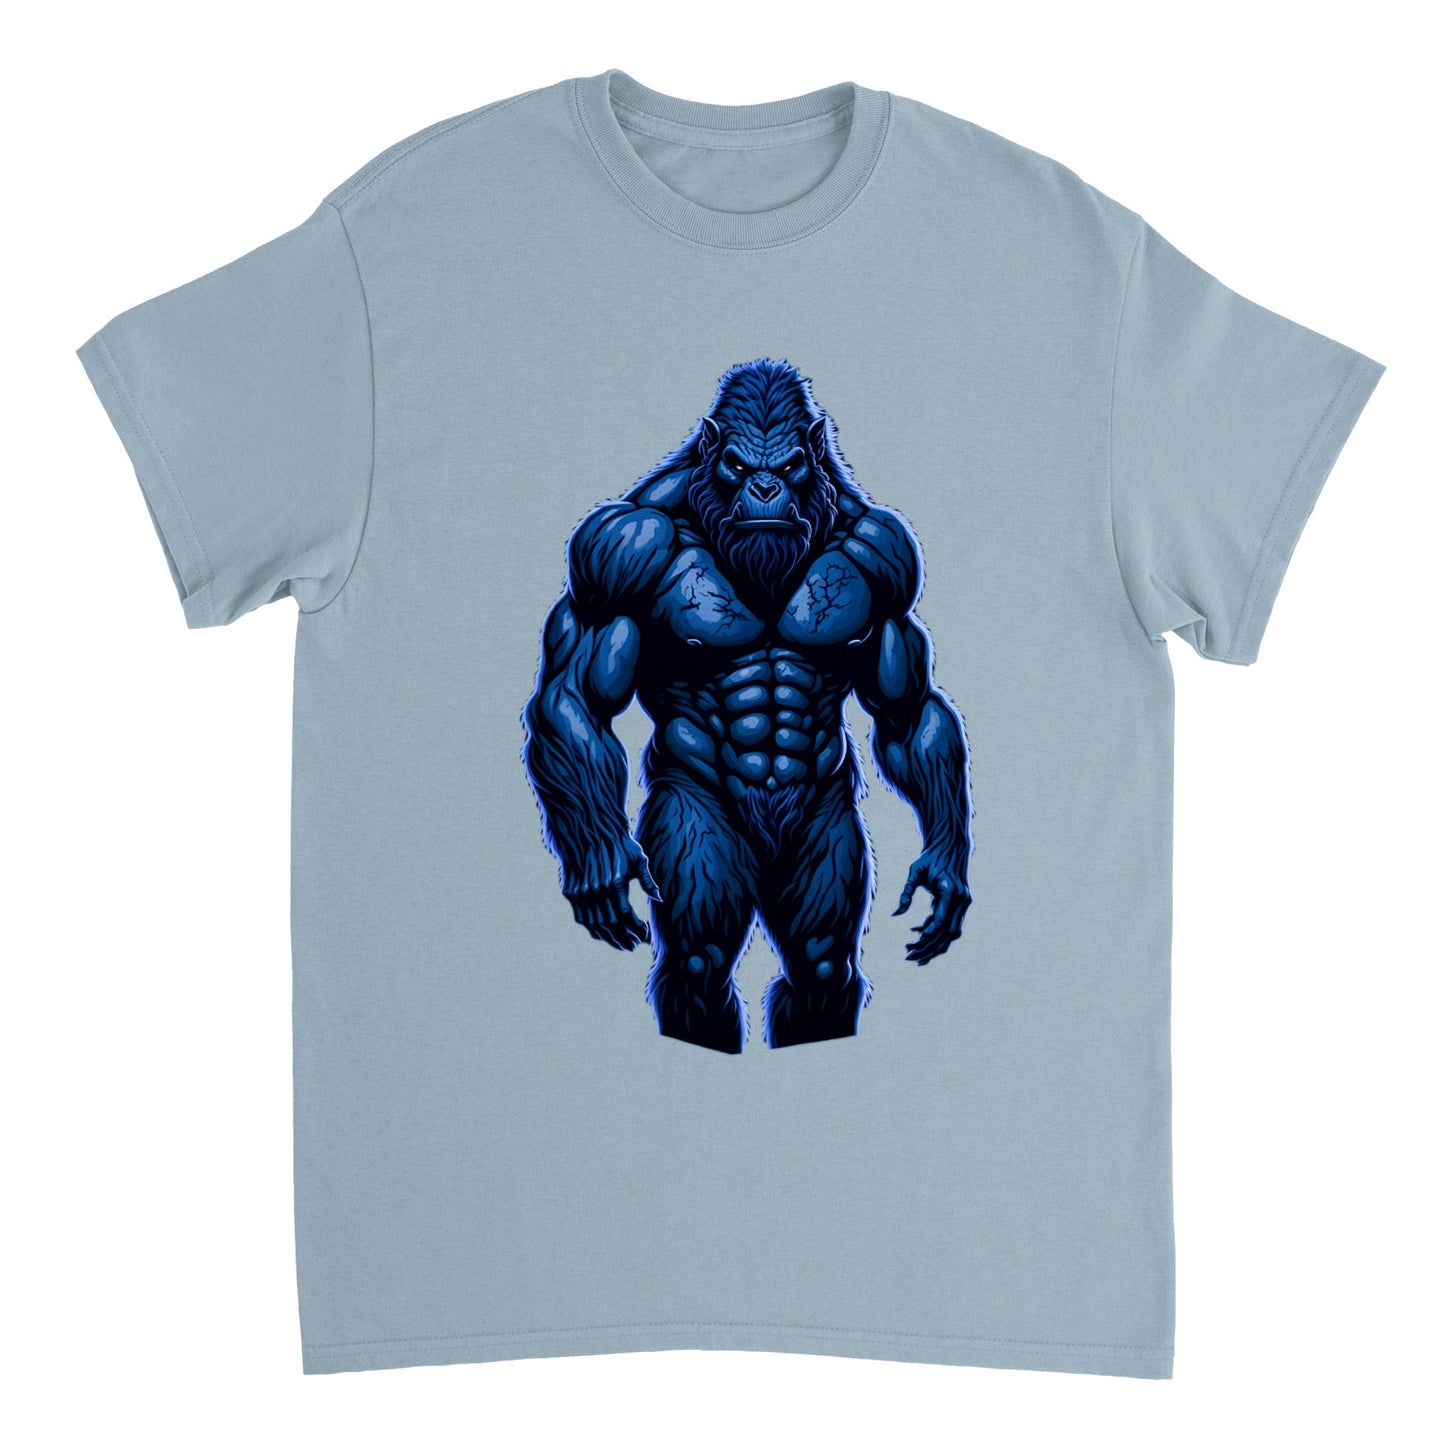 3D Bigfoot Art - Heavyweight Unisex Crewneck T-shirt 30